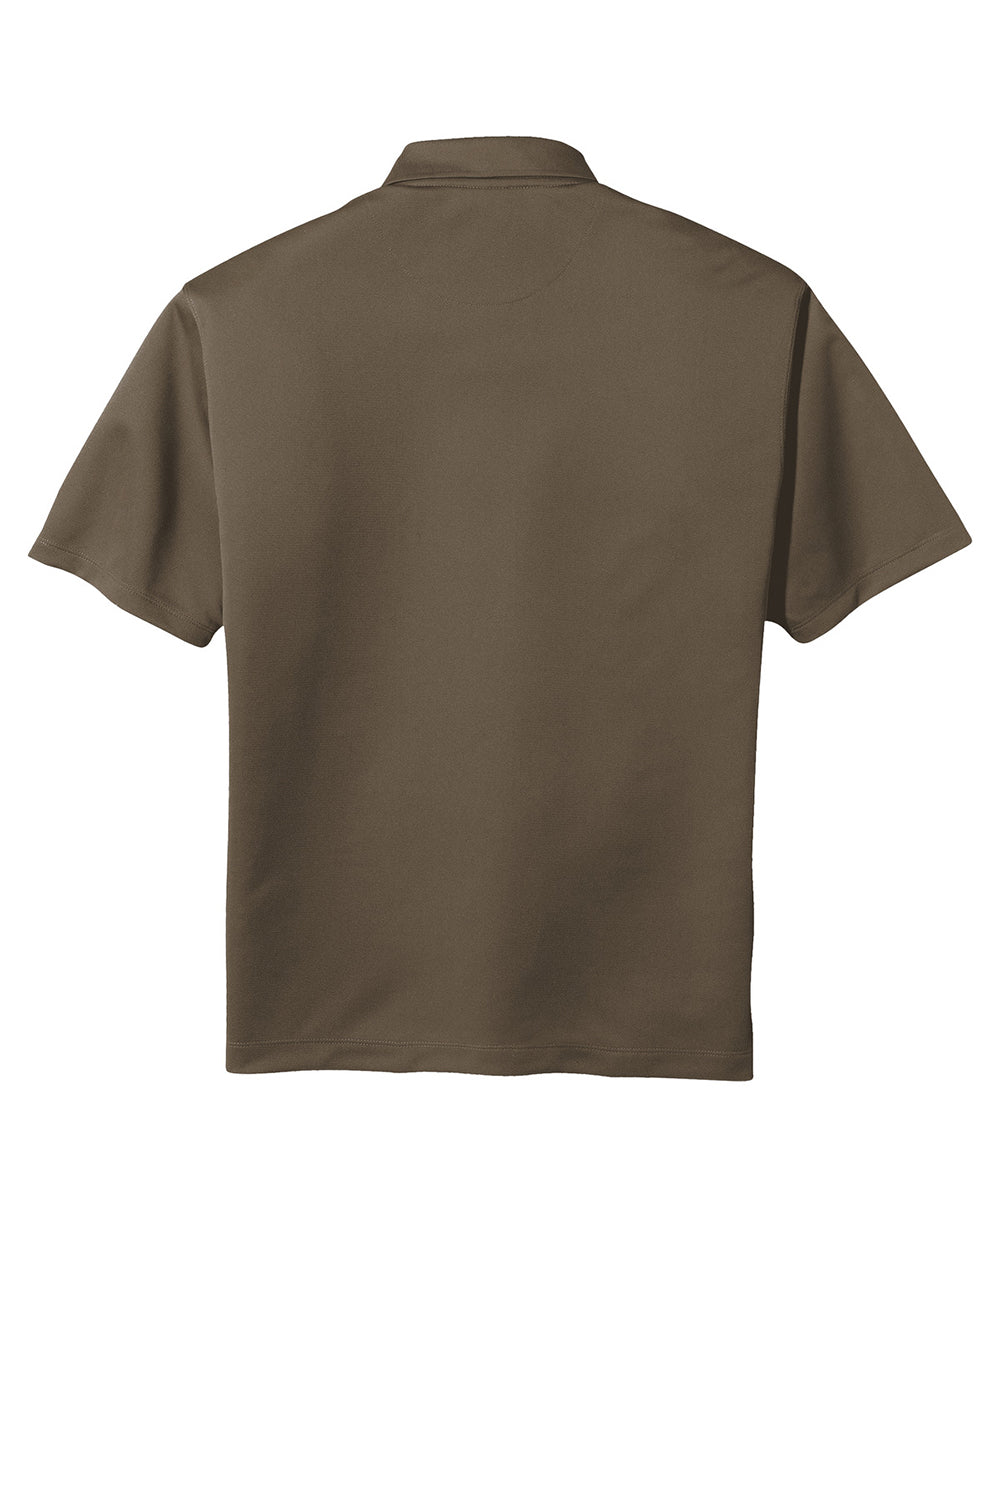 Nike 203690 Mens Tech Basic Dri-Fit Moisture Wicking Short Sleeve Polo Shirt Olive Khaki Flat Back